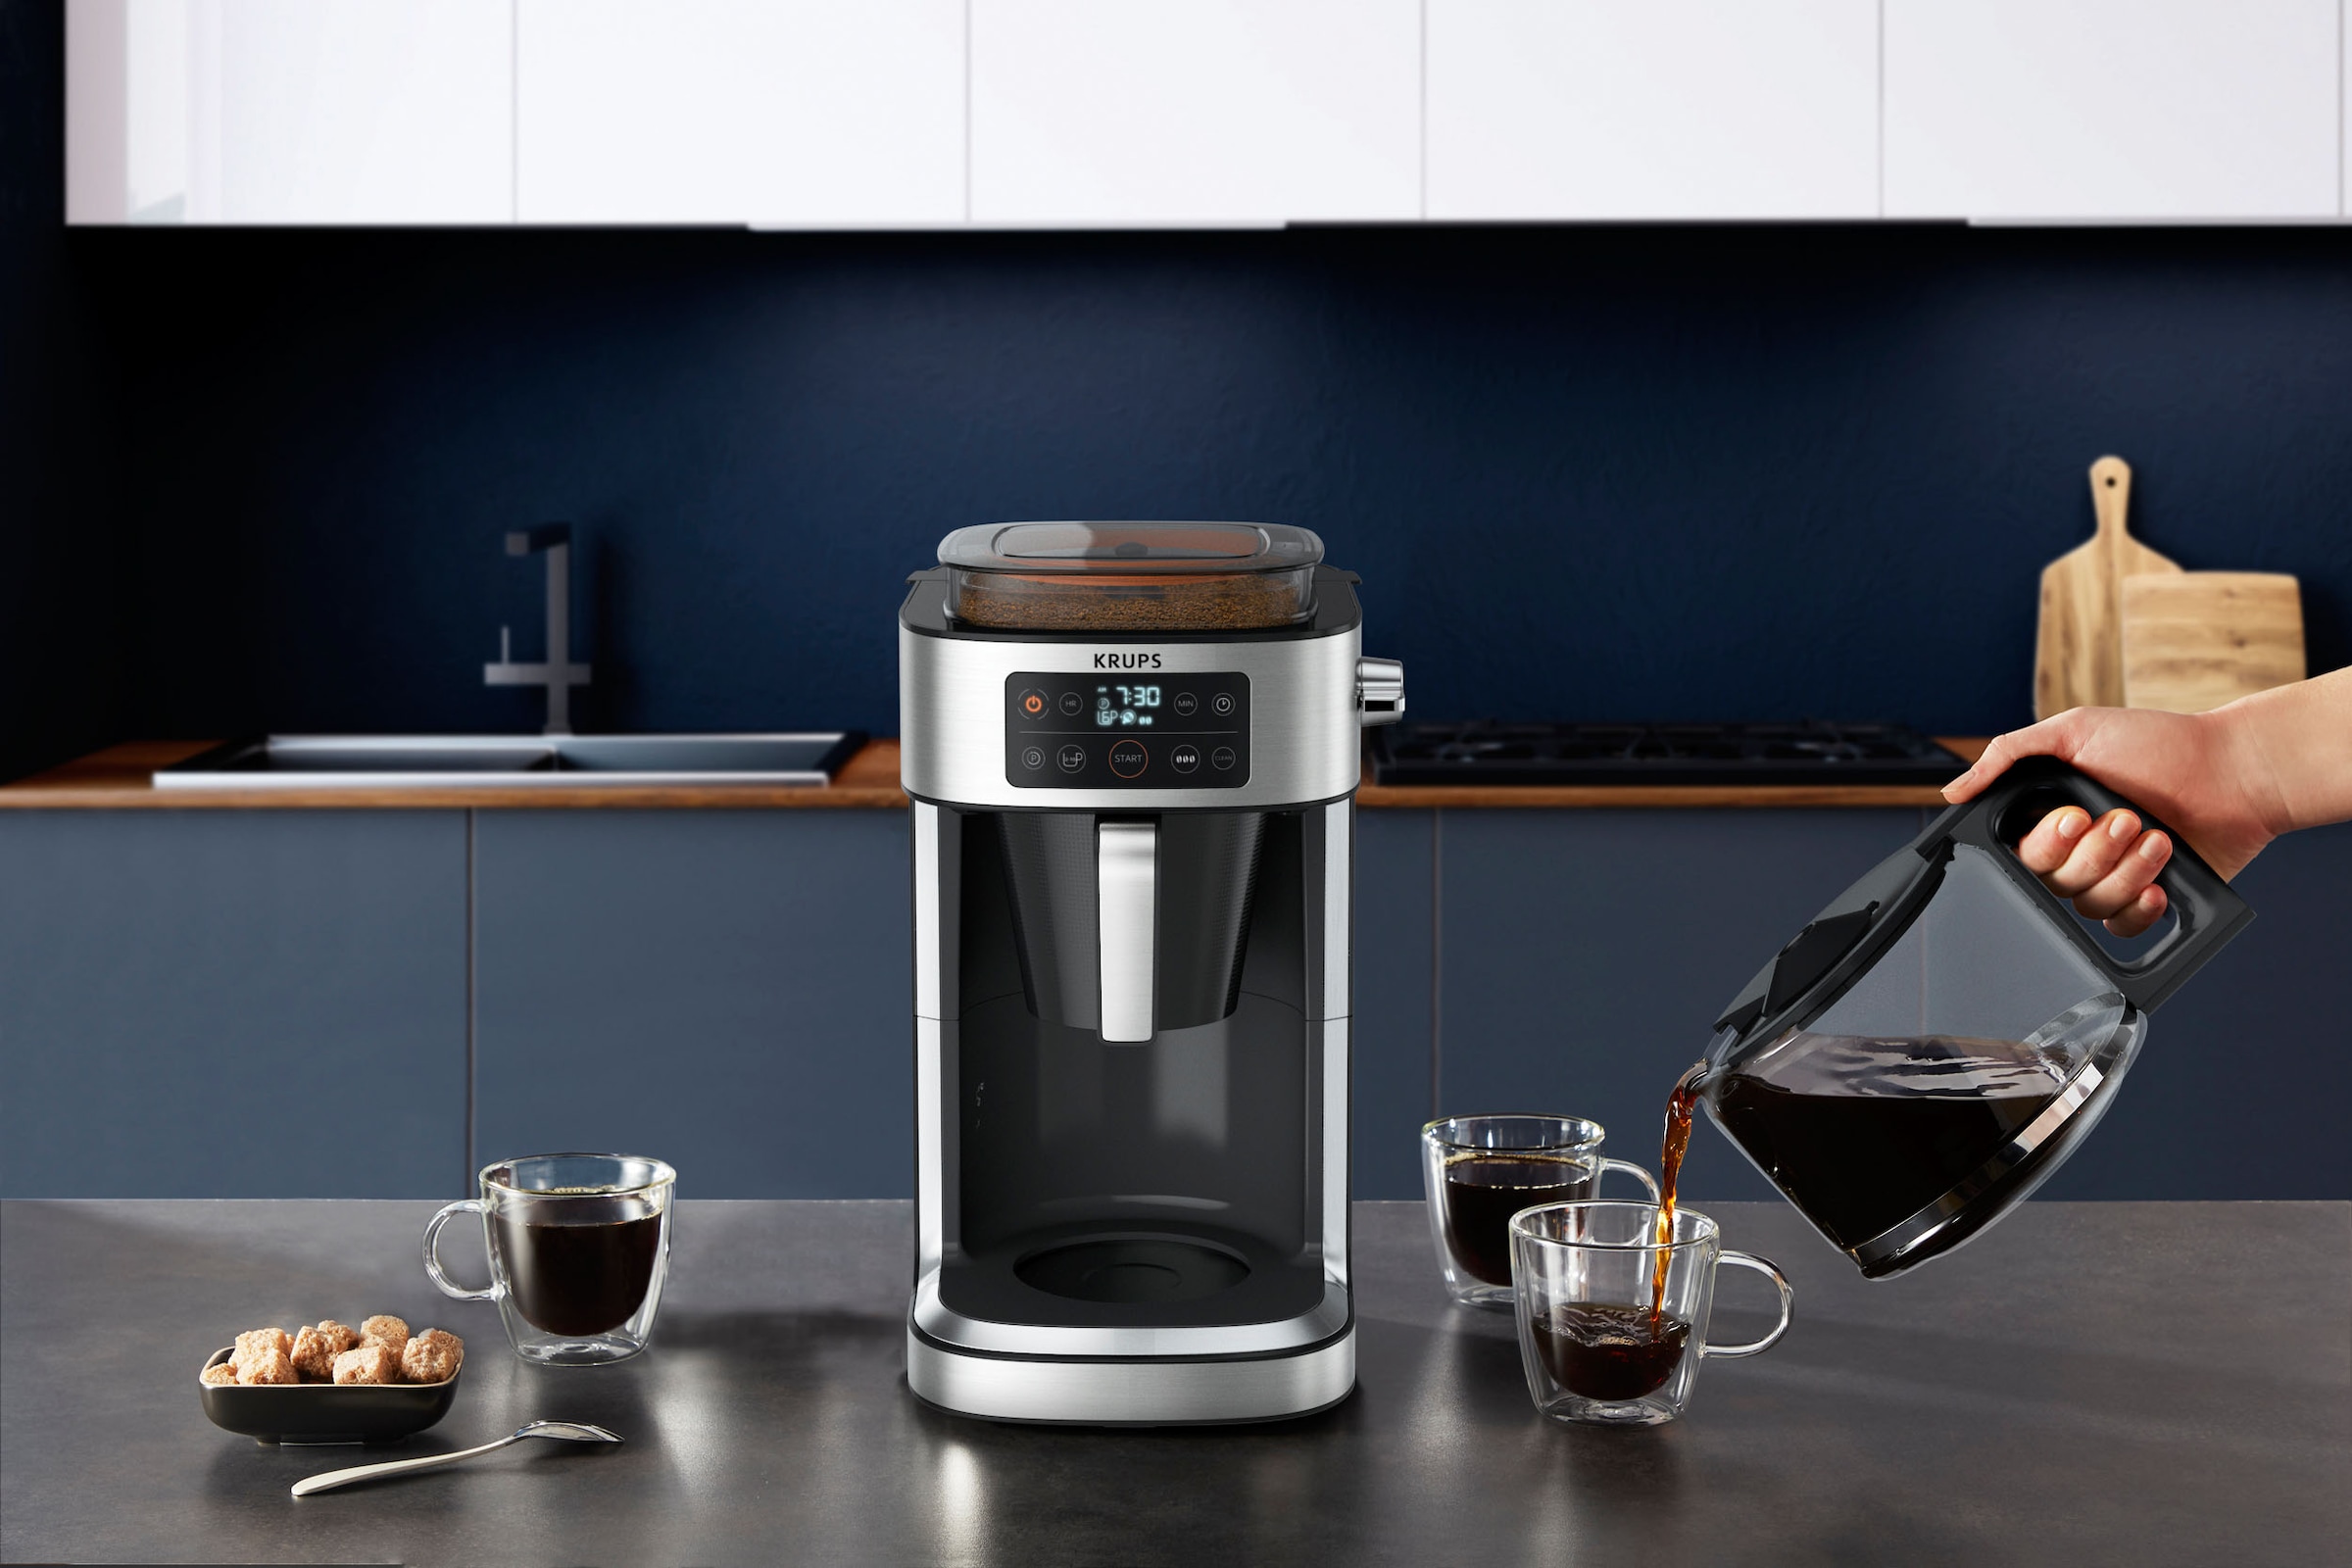 integrierte Garantie Jahren 400 Krups »KM760D für g XXL 1,25 Kaffee zu l Aroma bis Partner«, mit 3 Filterkaffeemaschine Kaffee-Vorratsbox frischen Kaffeekanne,